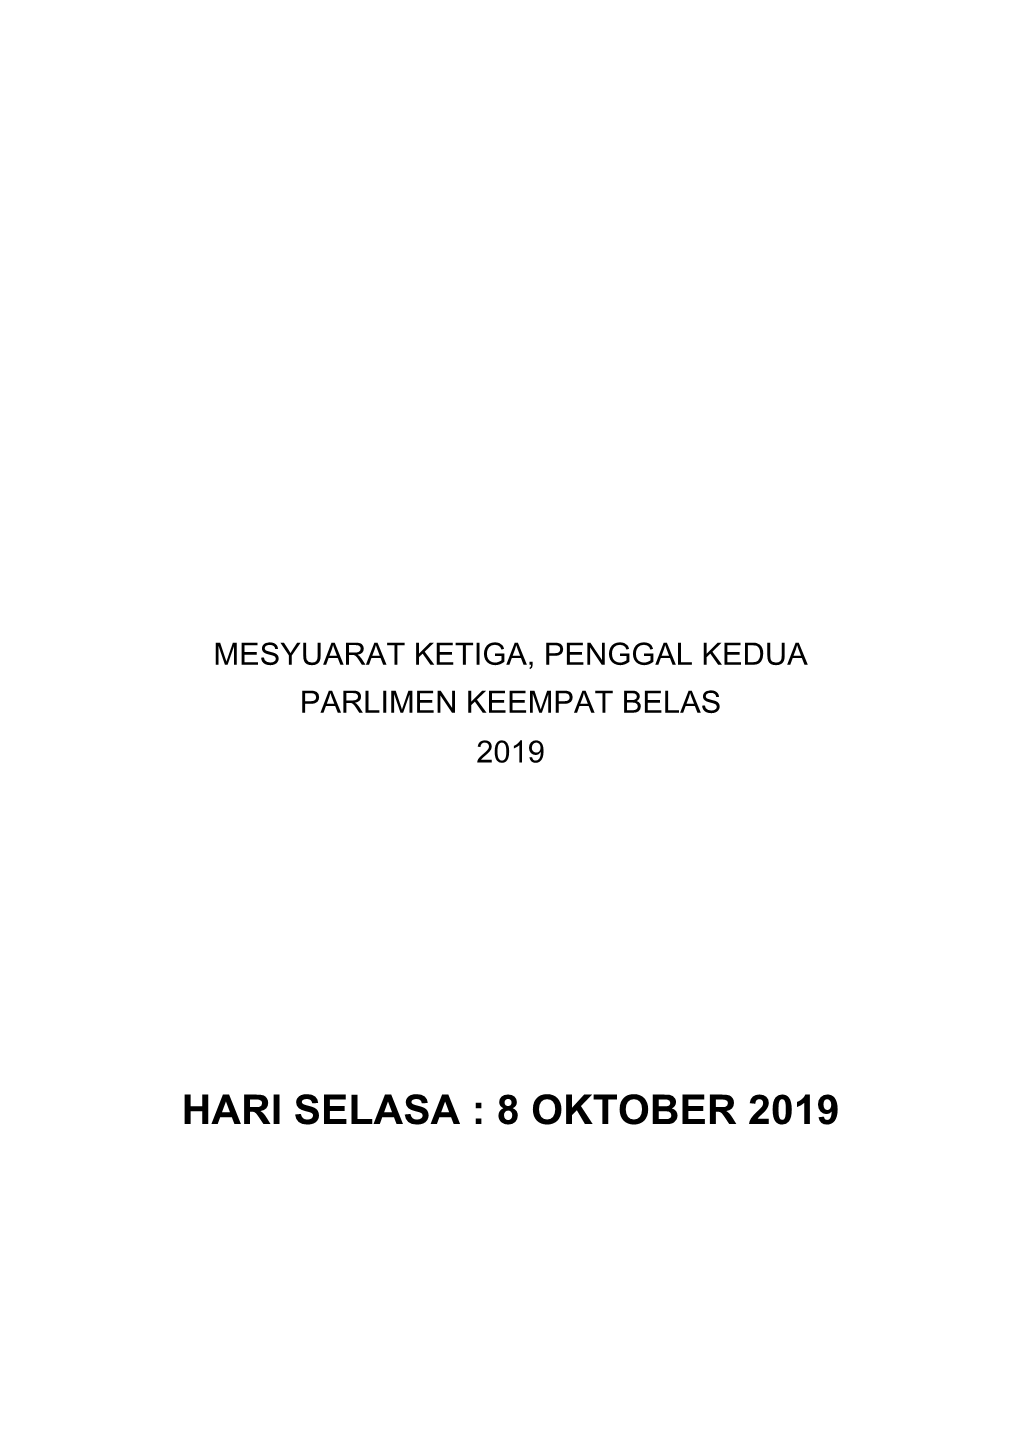 8 Oktober 2019 No Soalan : 1